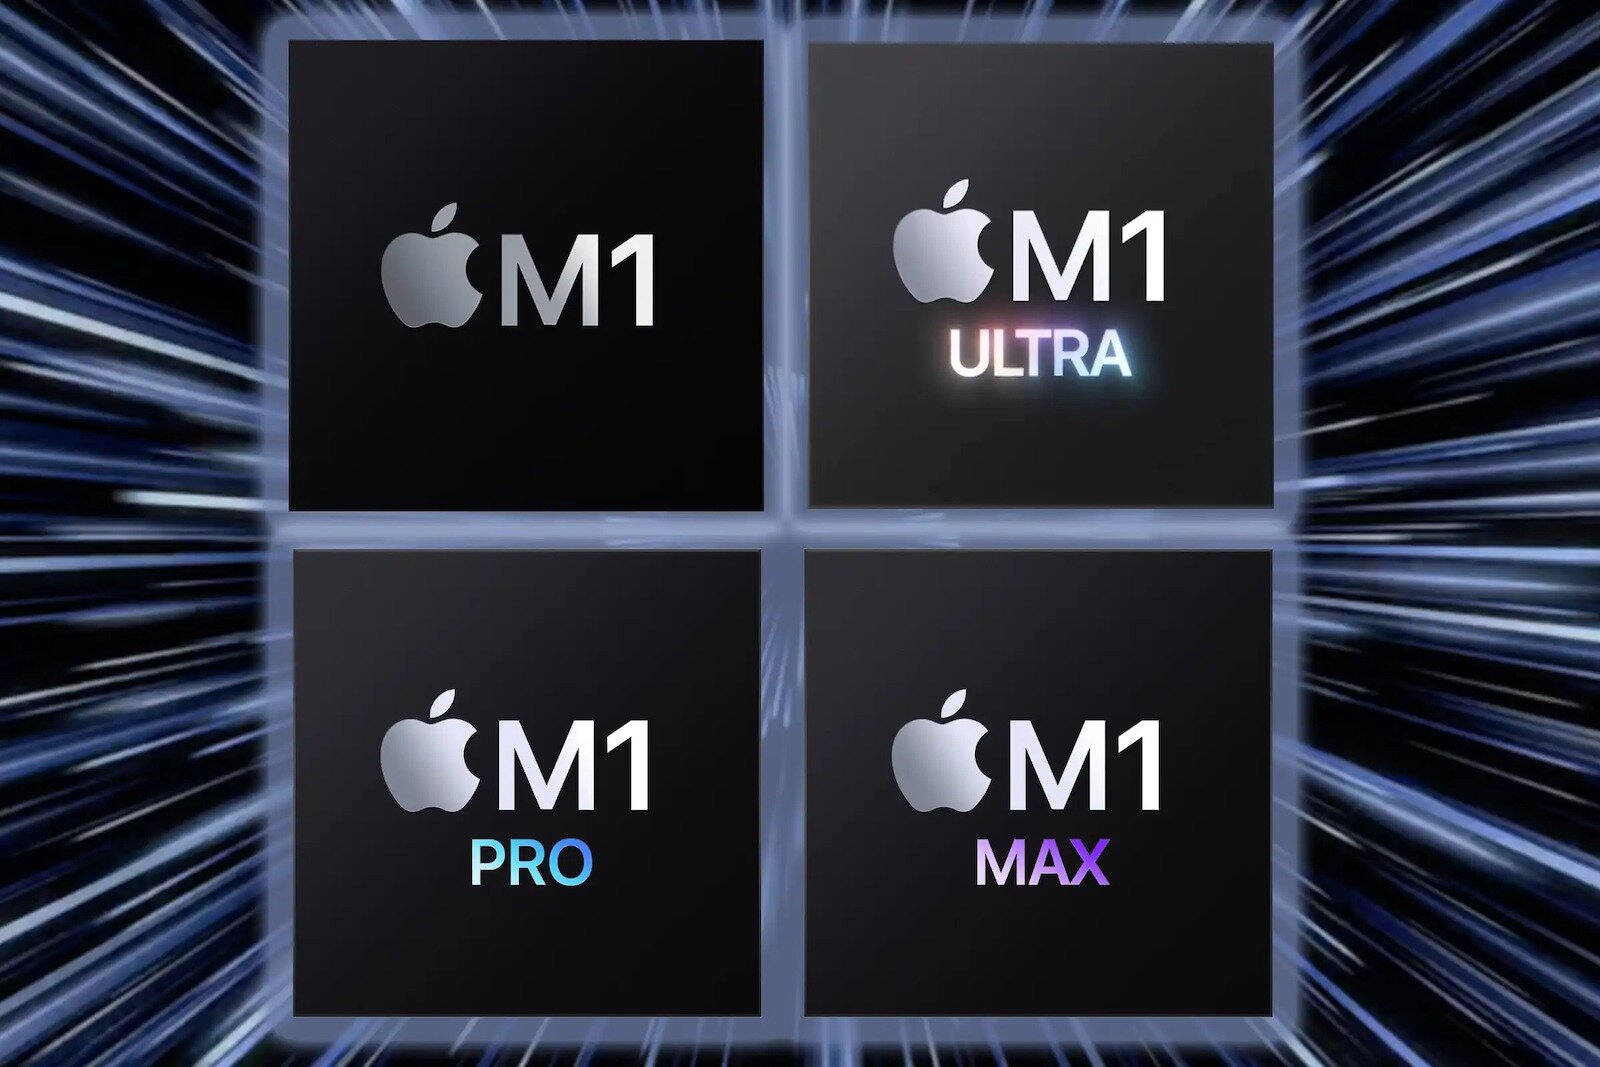 Με το M1 Ultra, η Apple θέλει να ξεπεράσει σε απόδοση την GeForce RTX 3090 της Nvidia